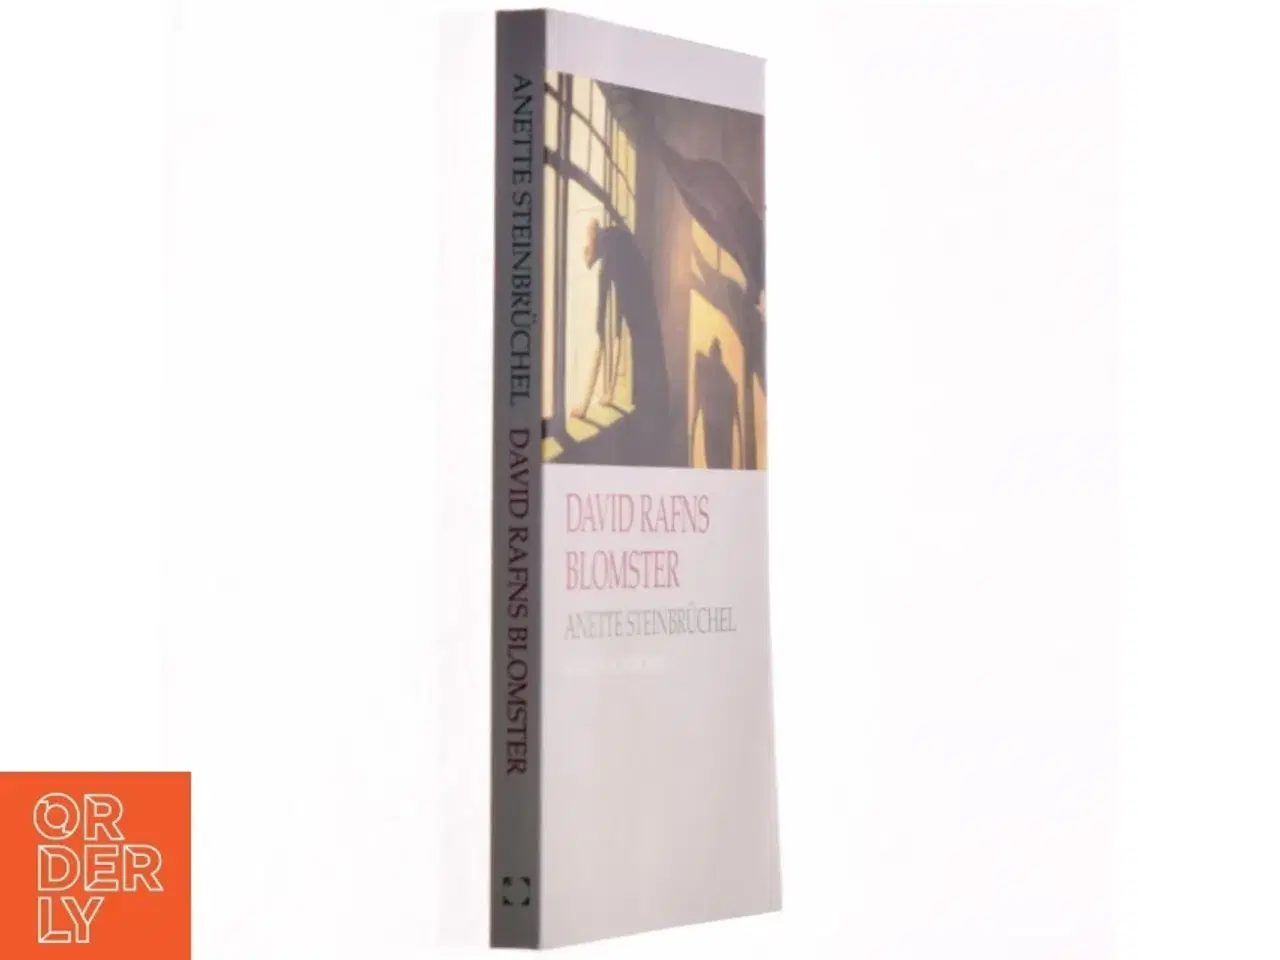 Billede 1 - David Rafns blomster : roman af Anette Steinbrüchel (Bog)